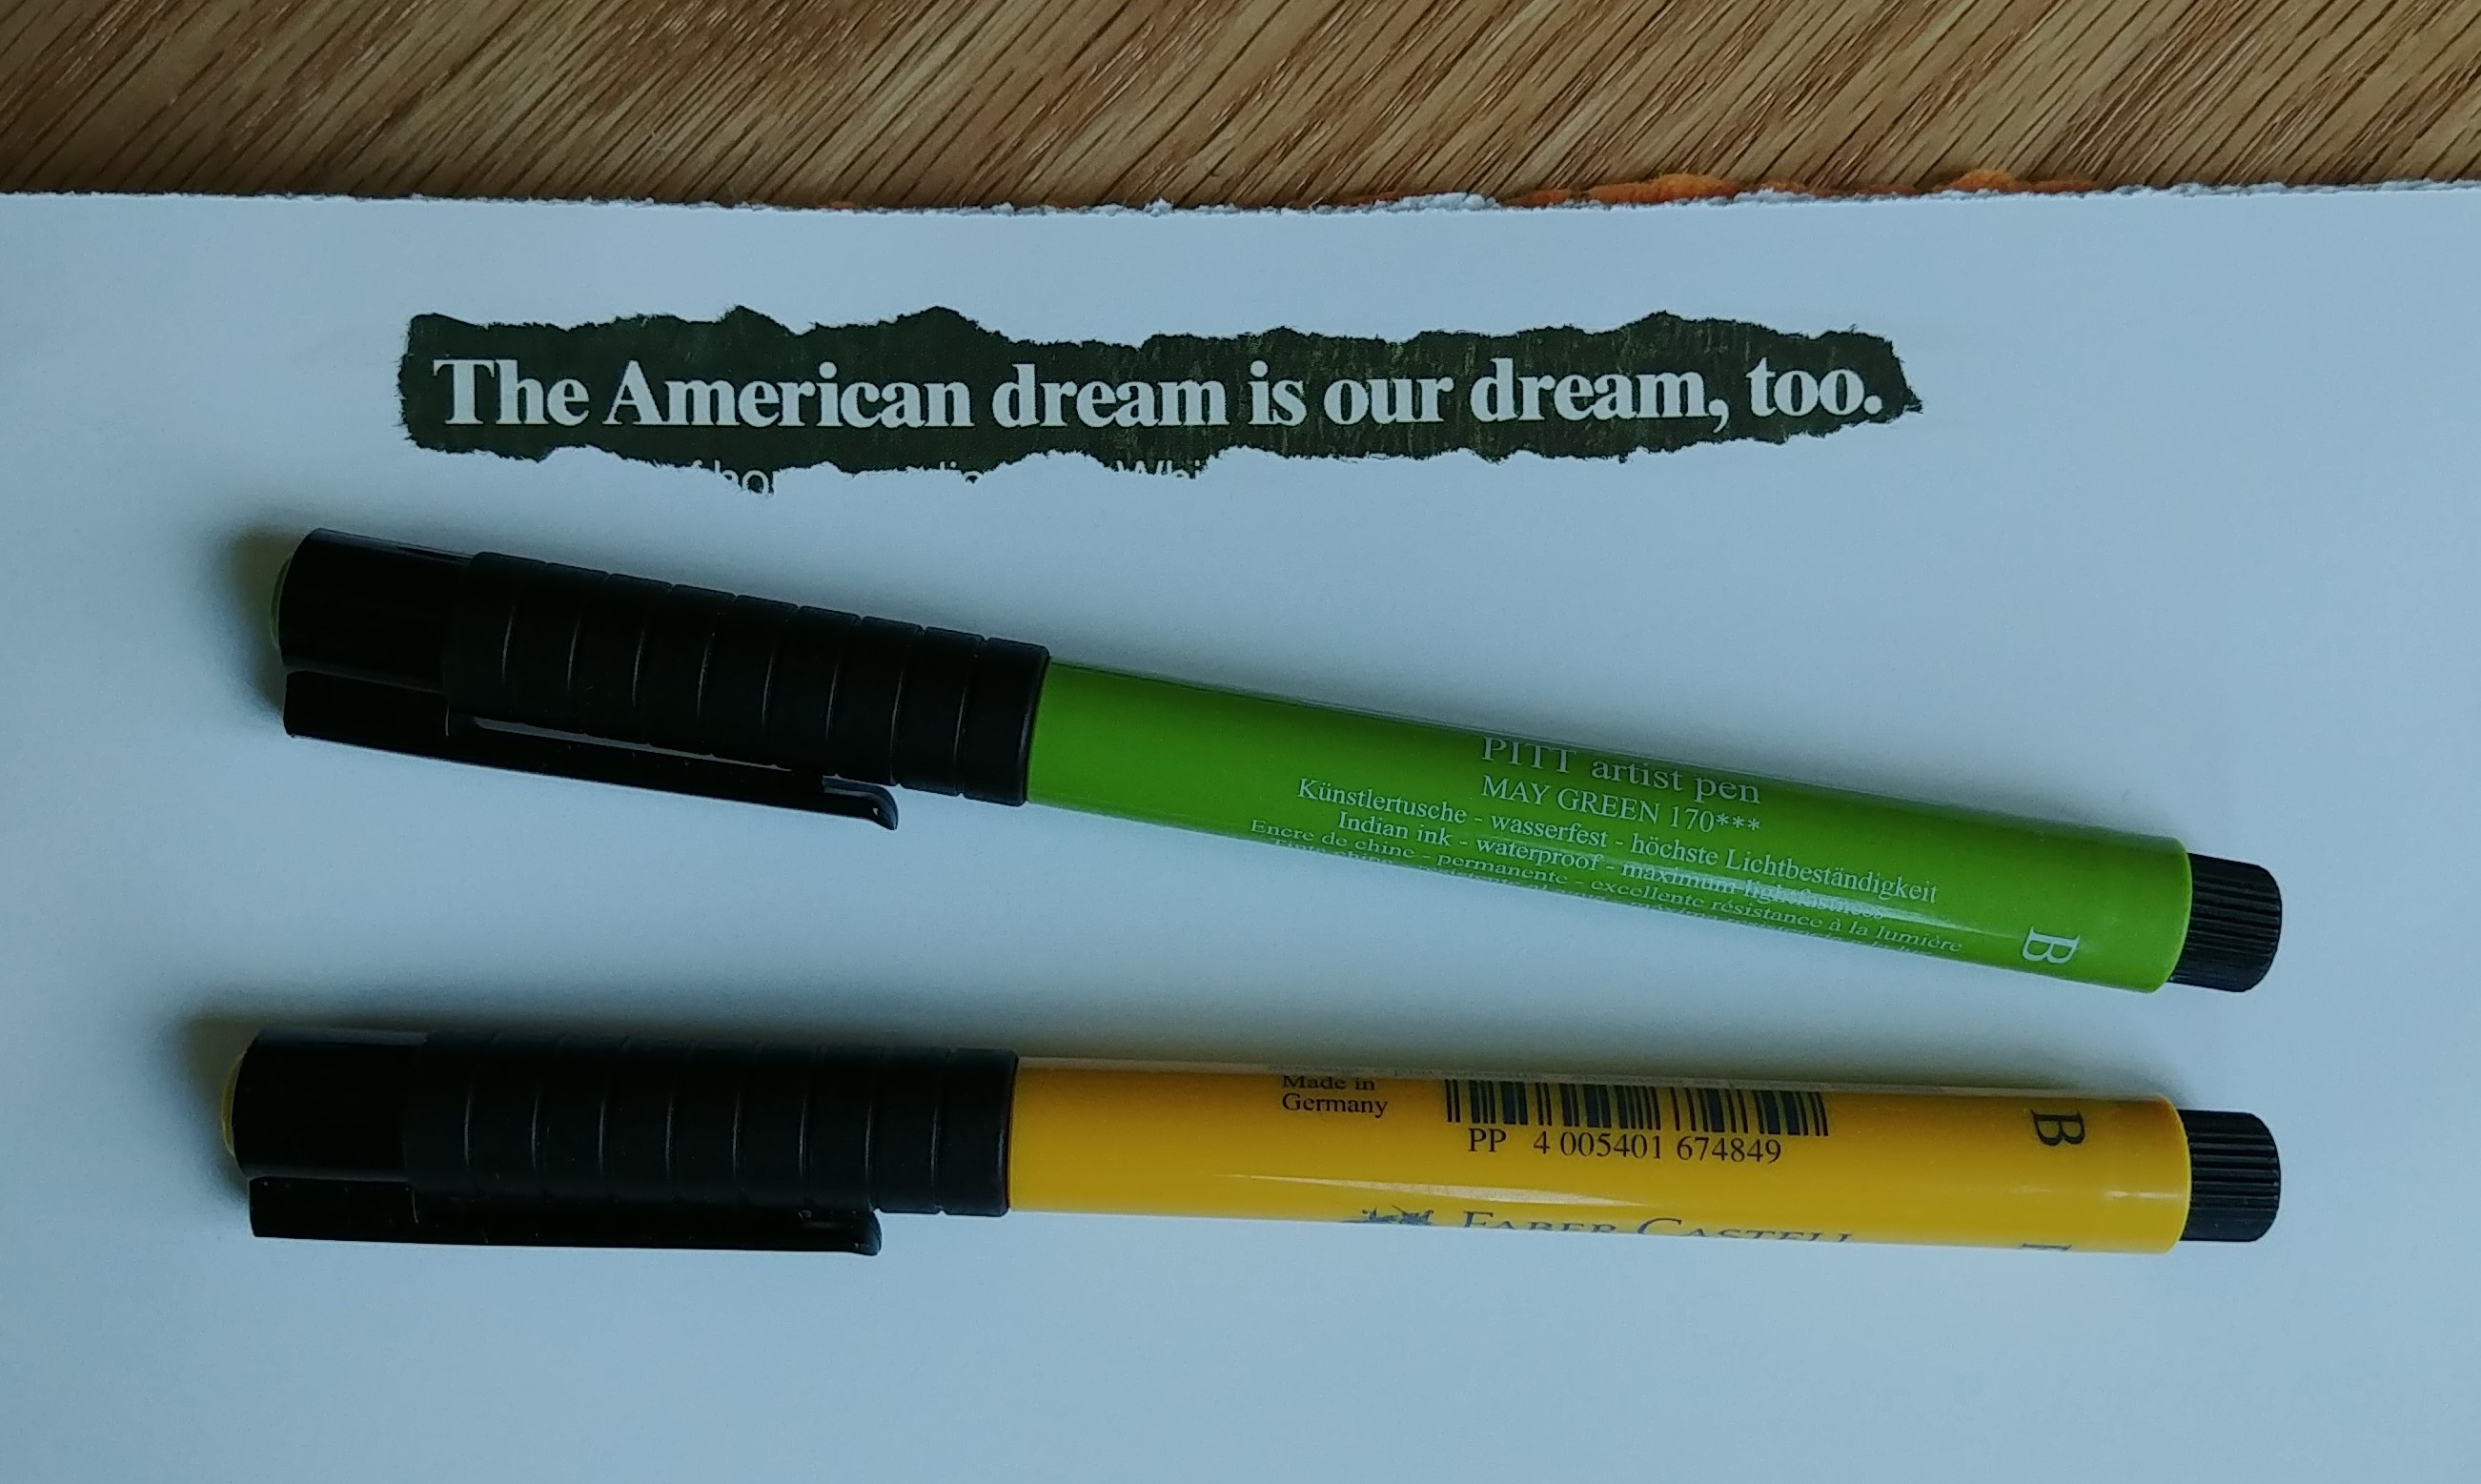 American-dream quote